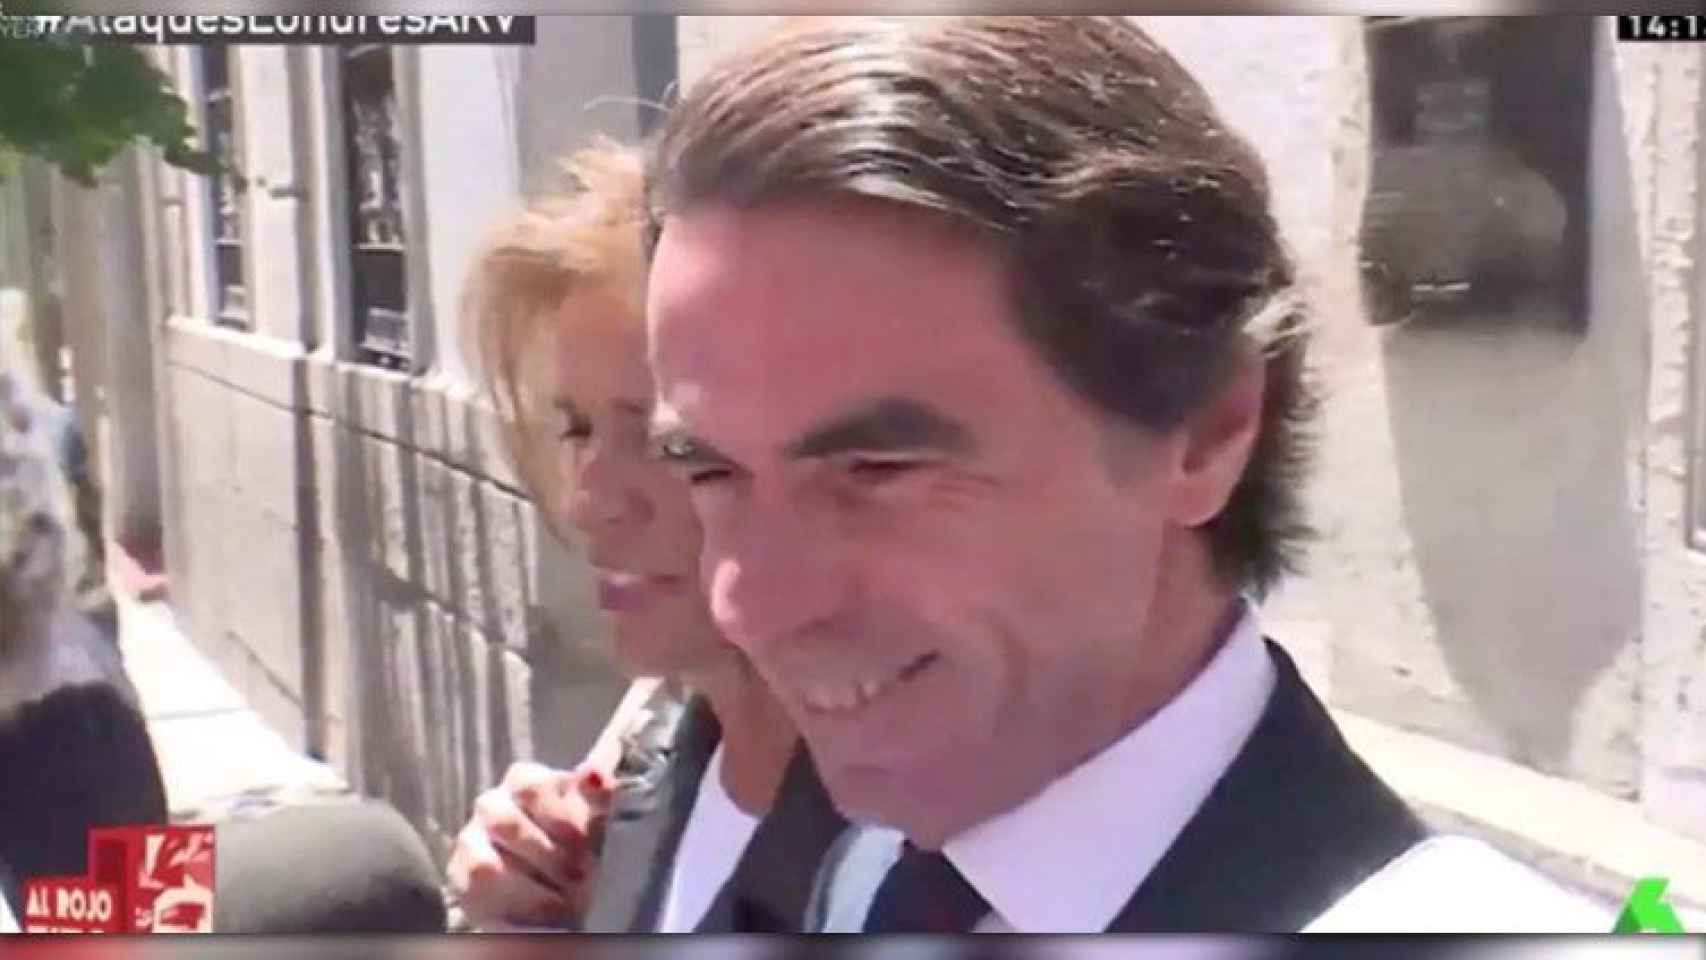 Aznar al ser preguntado por periodistas sobre el terrorismo